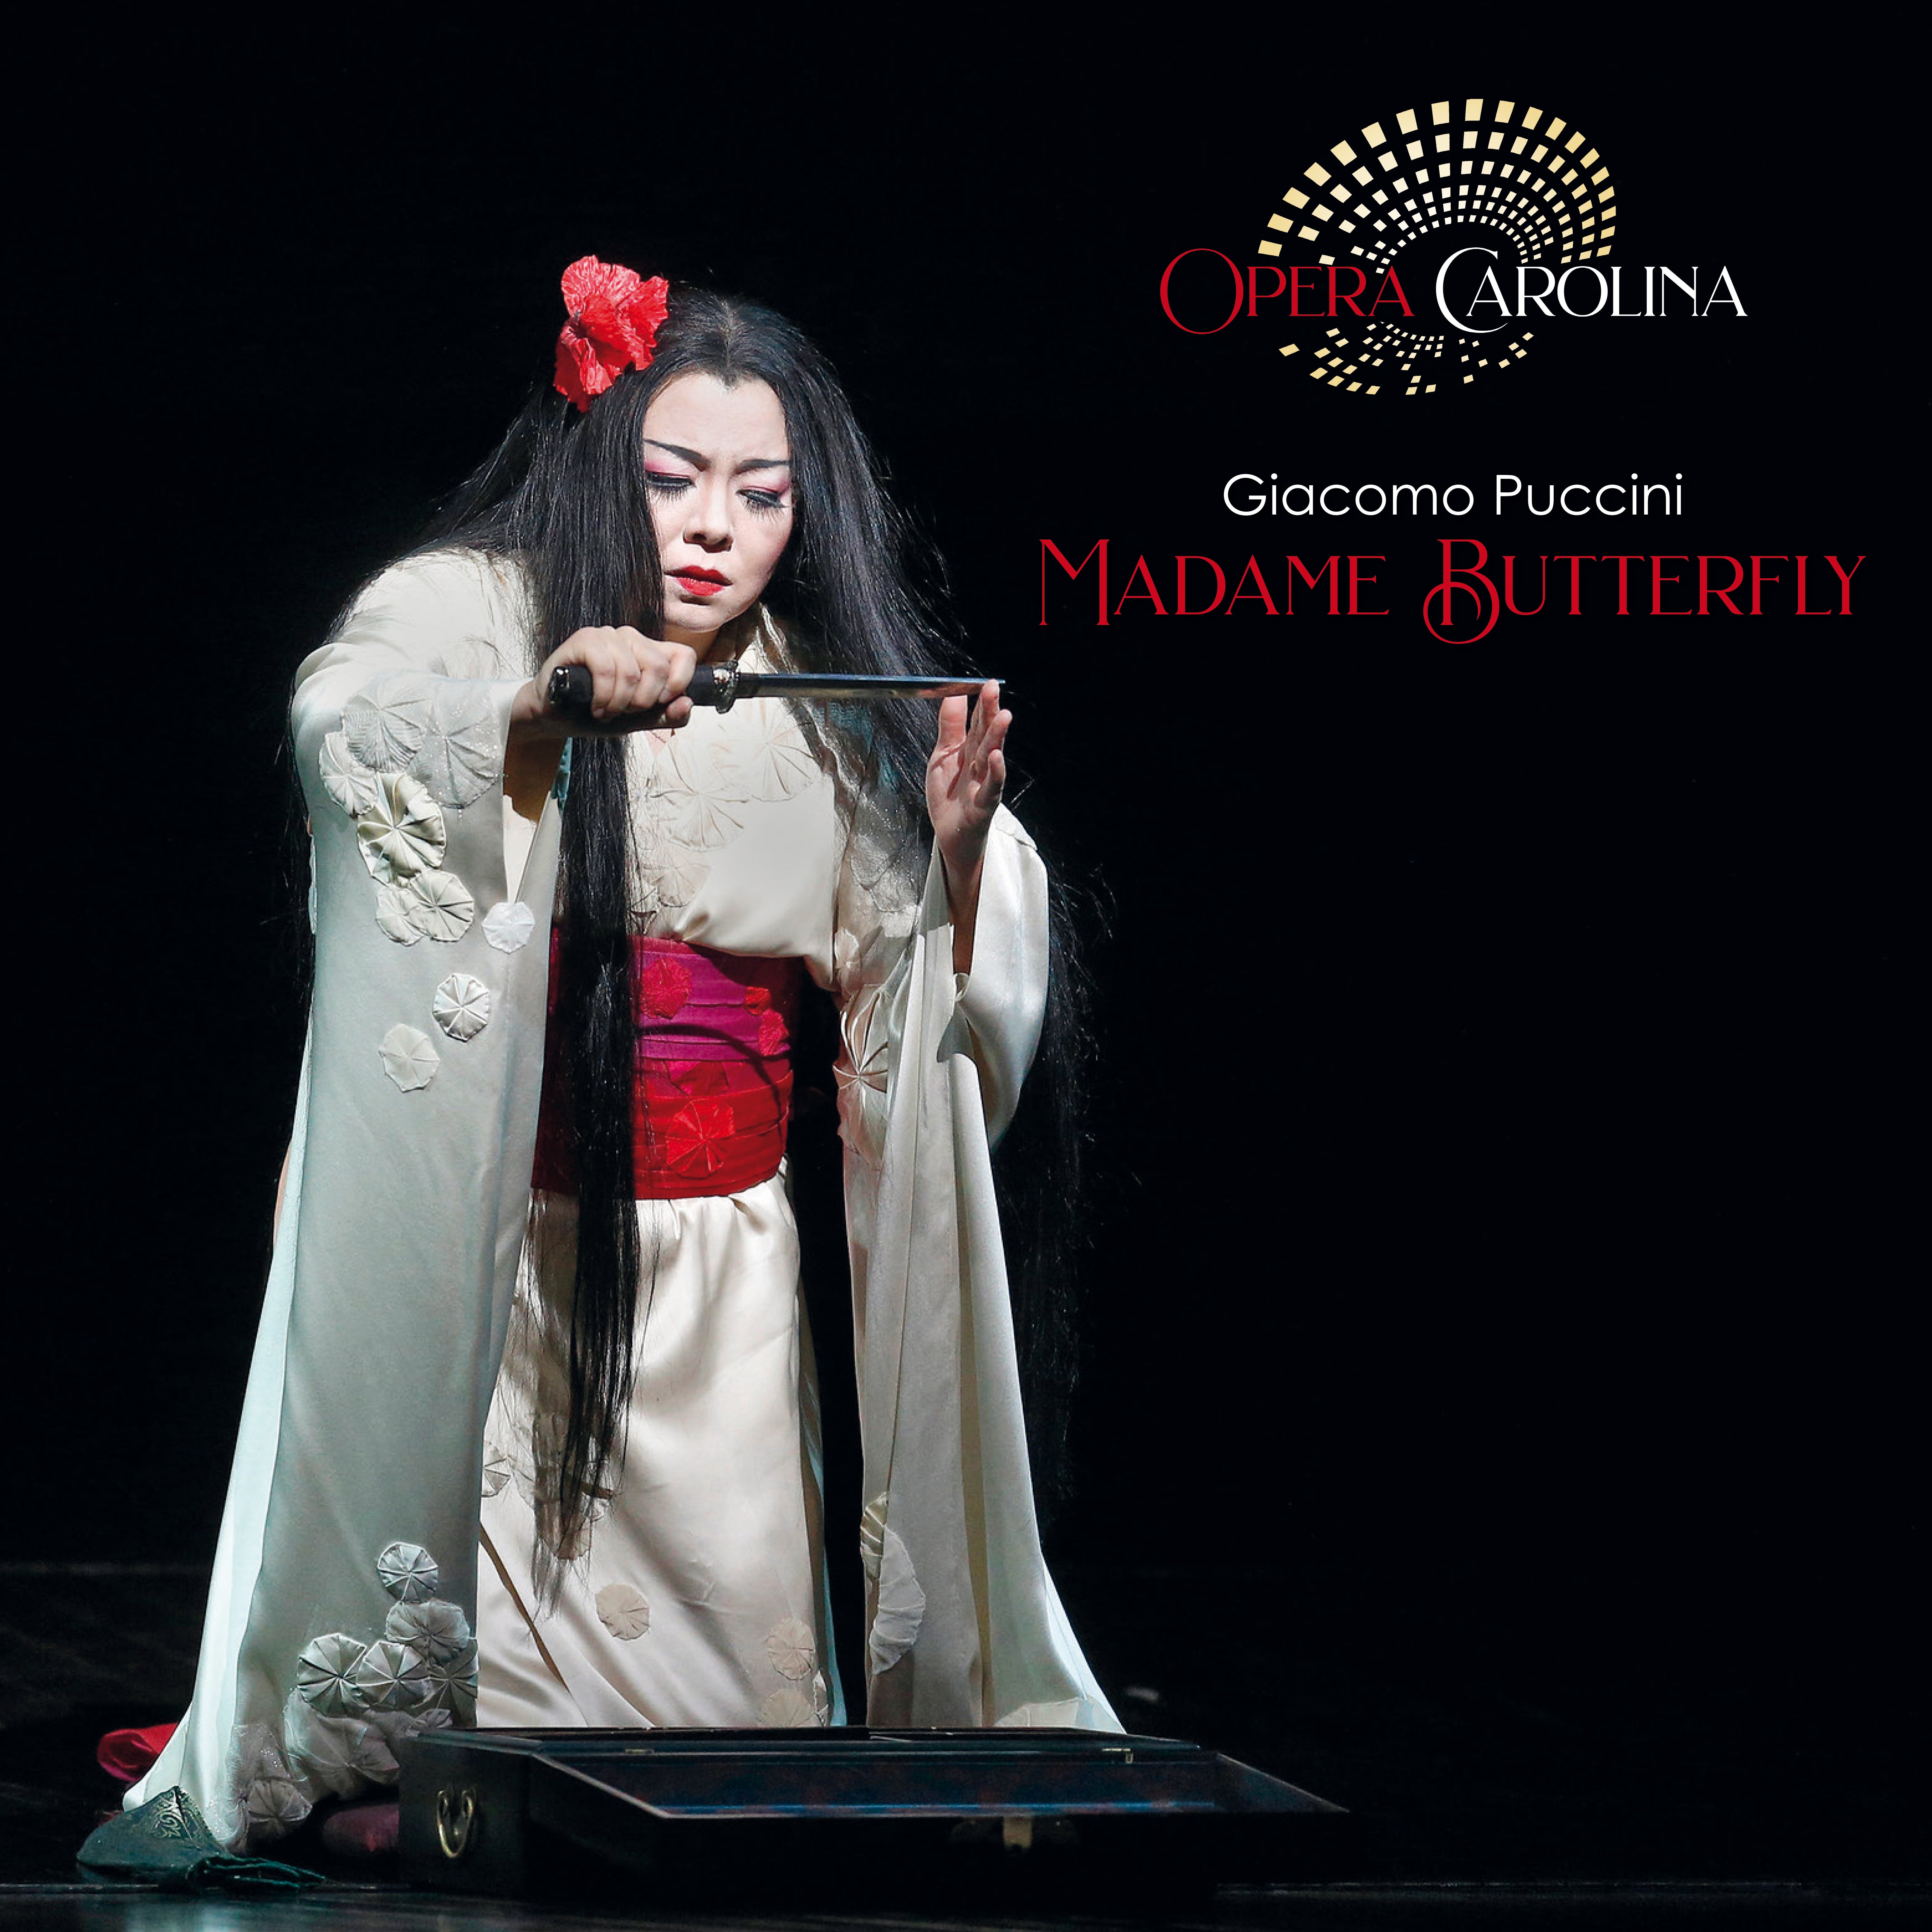 Opera Carolina - Madame Butterfly